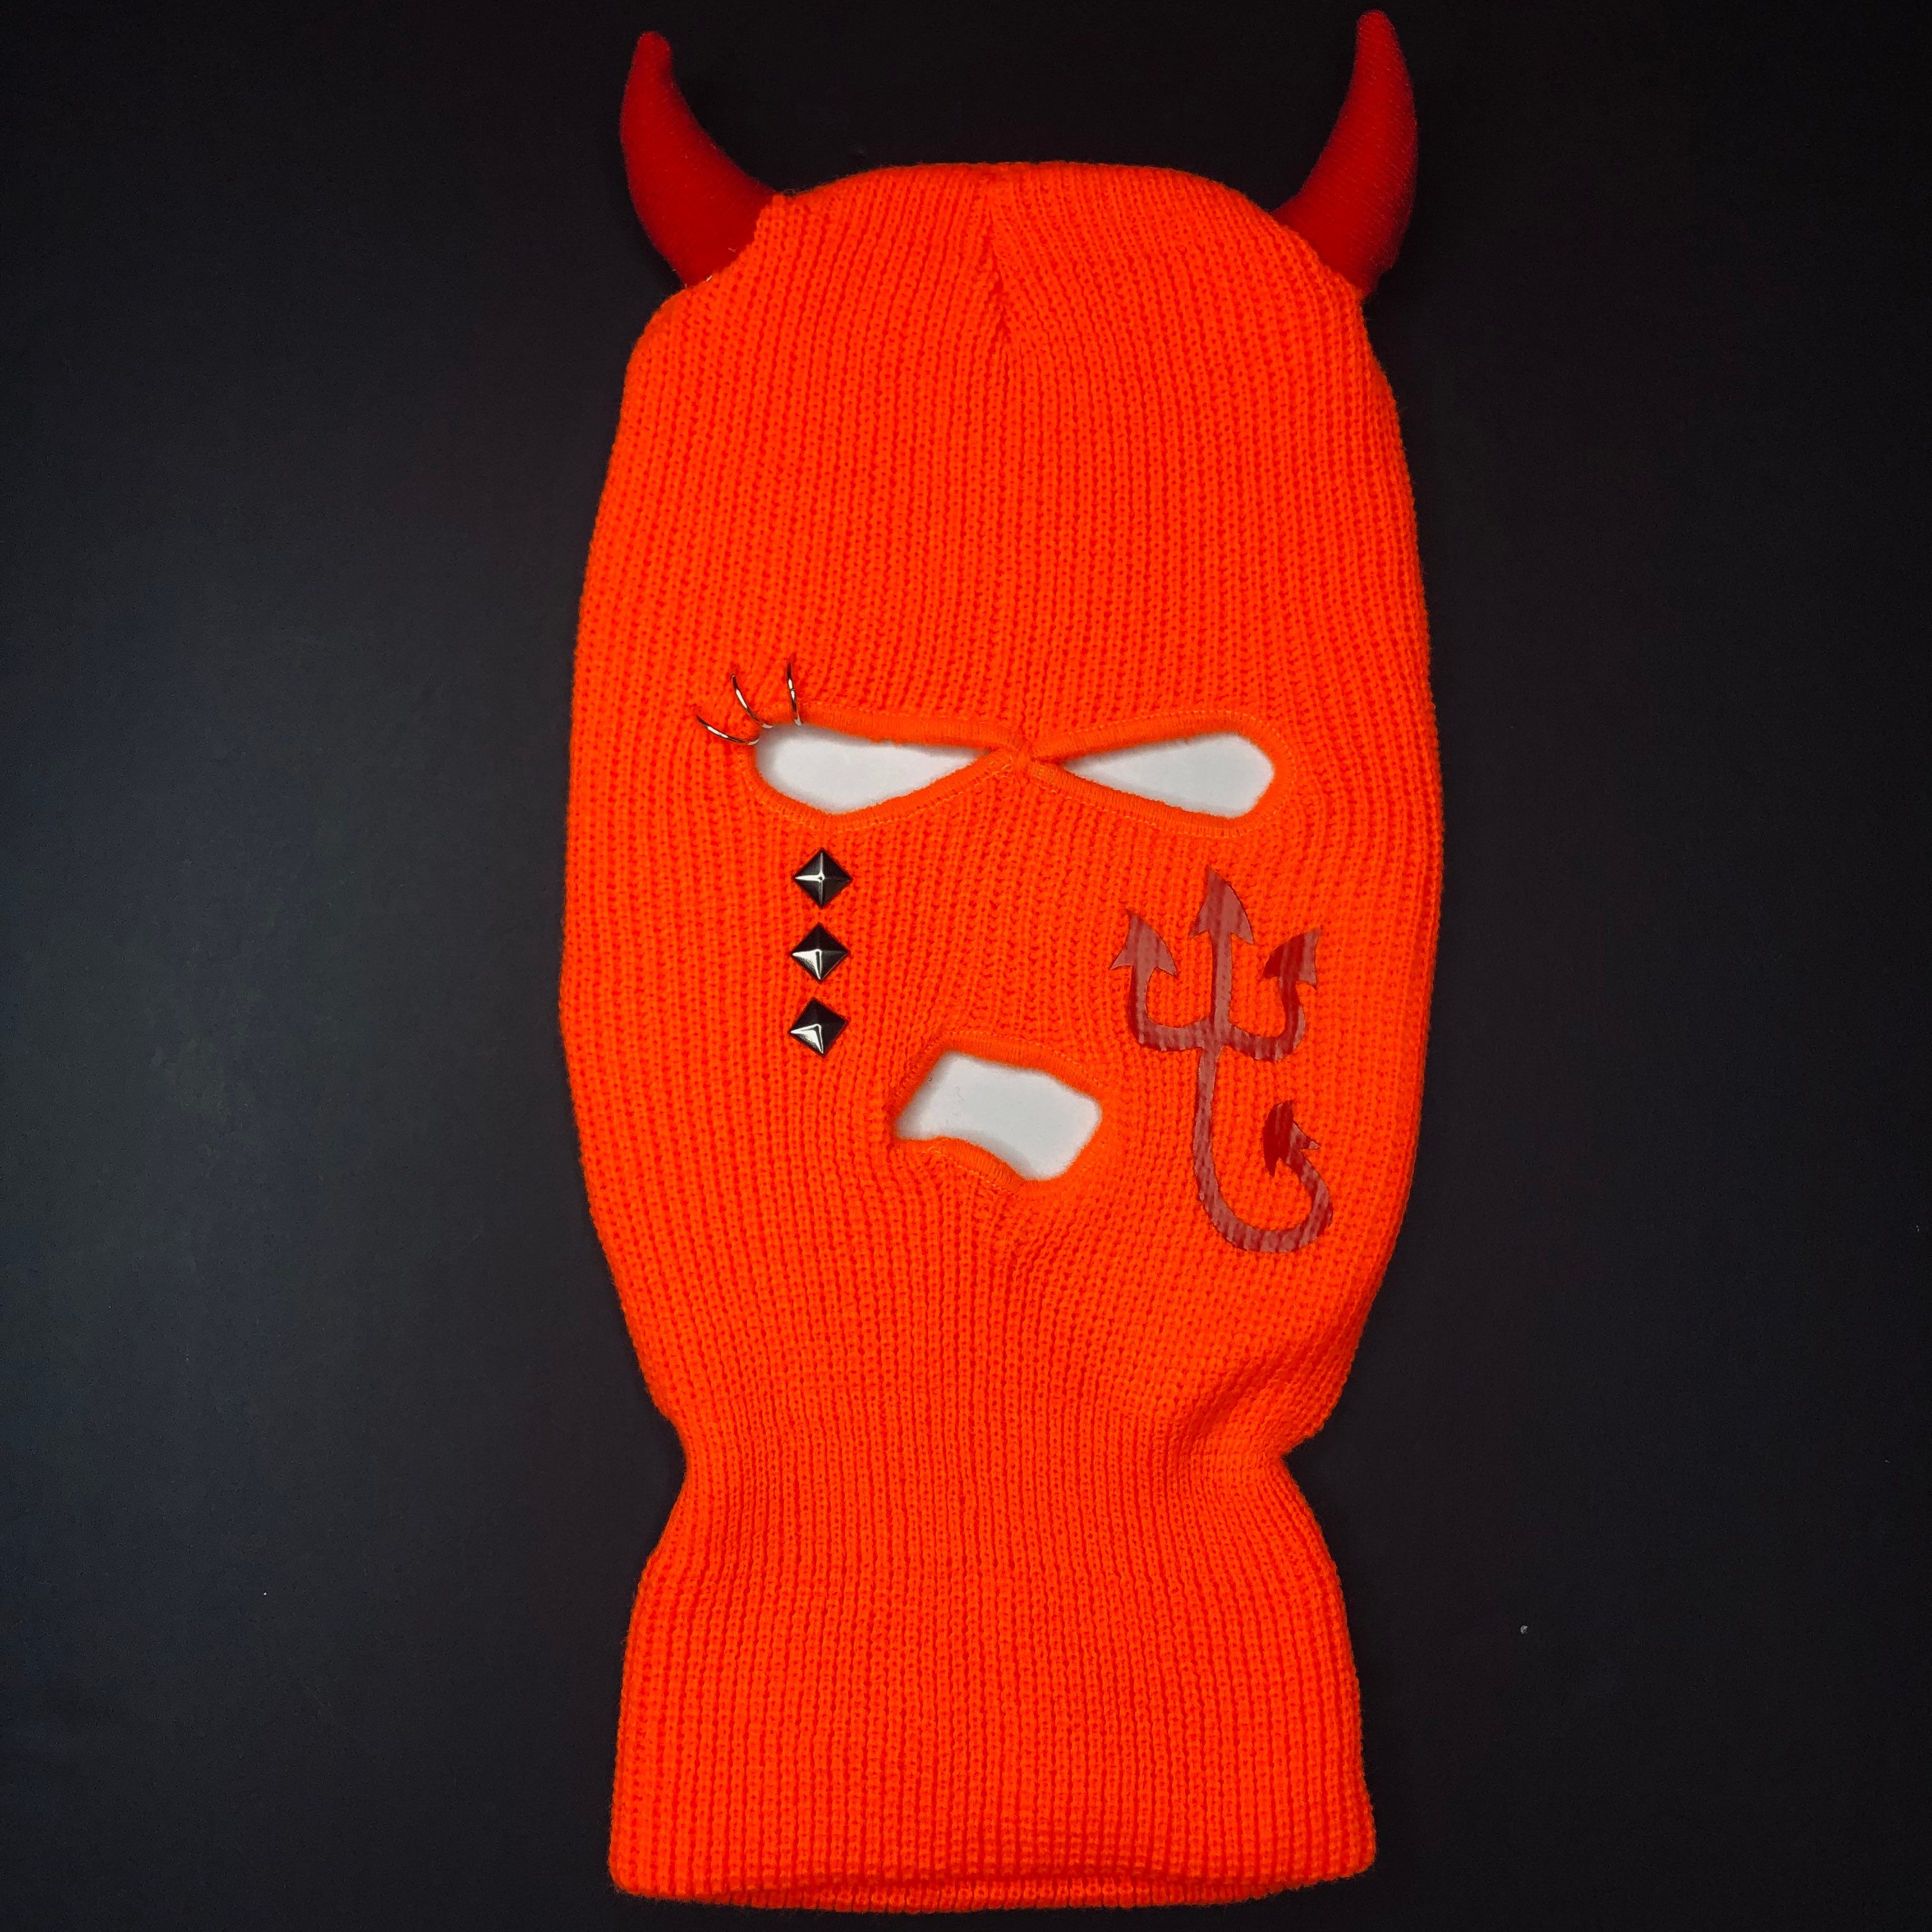 Unisex Super Sick CRY DEVIL Ski Mask Halloween skimask | Etsy